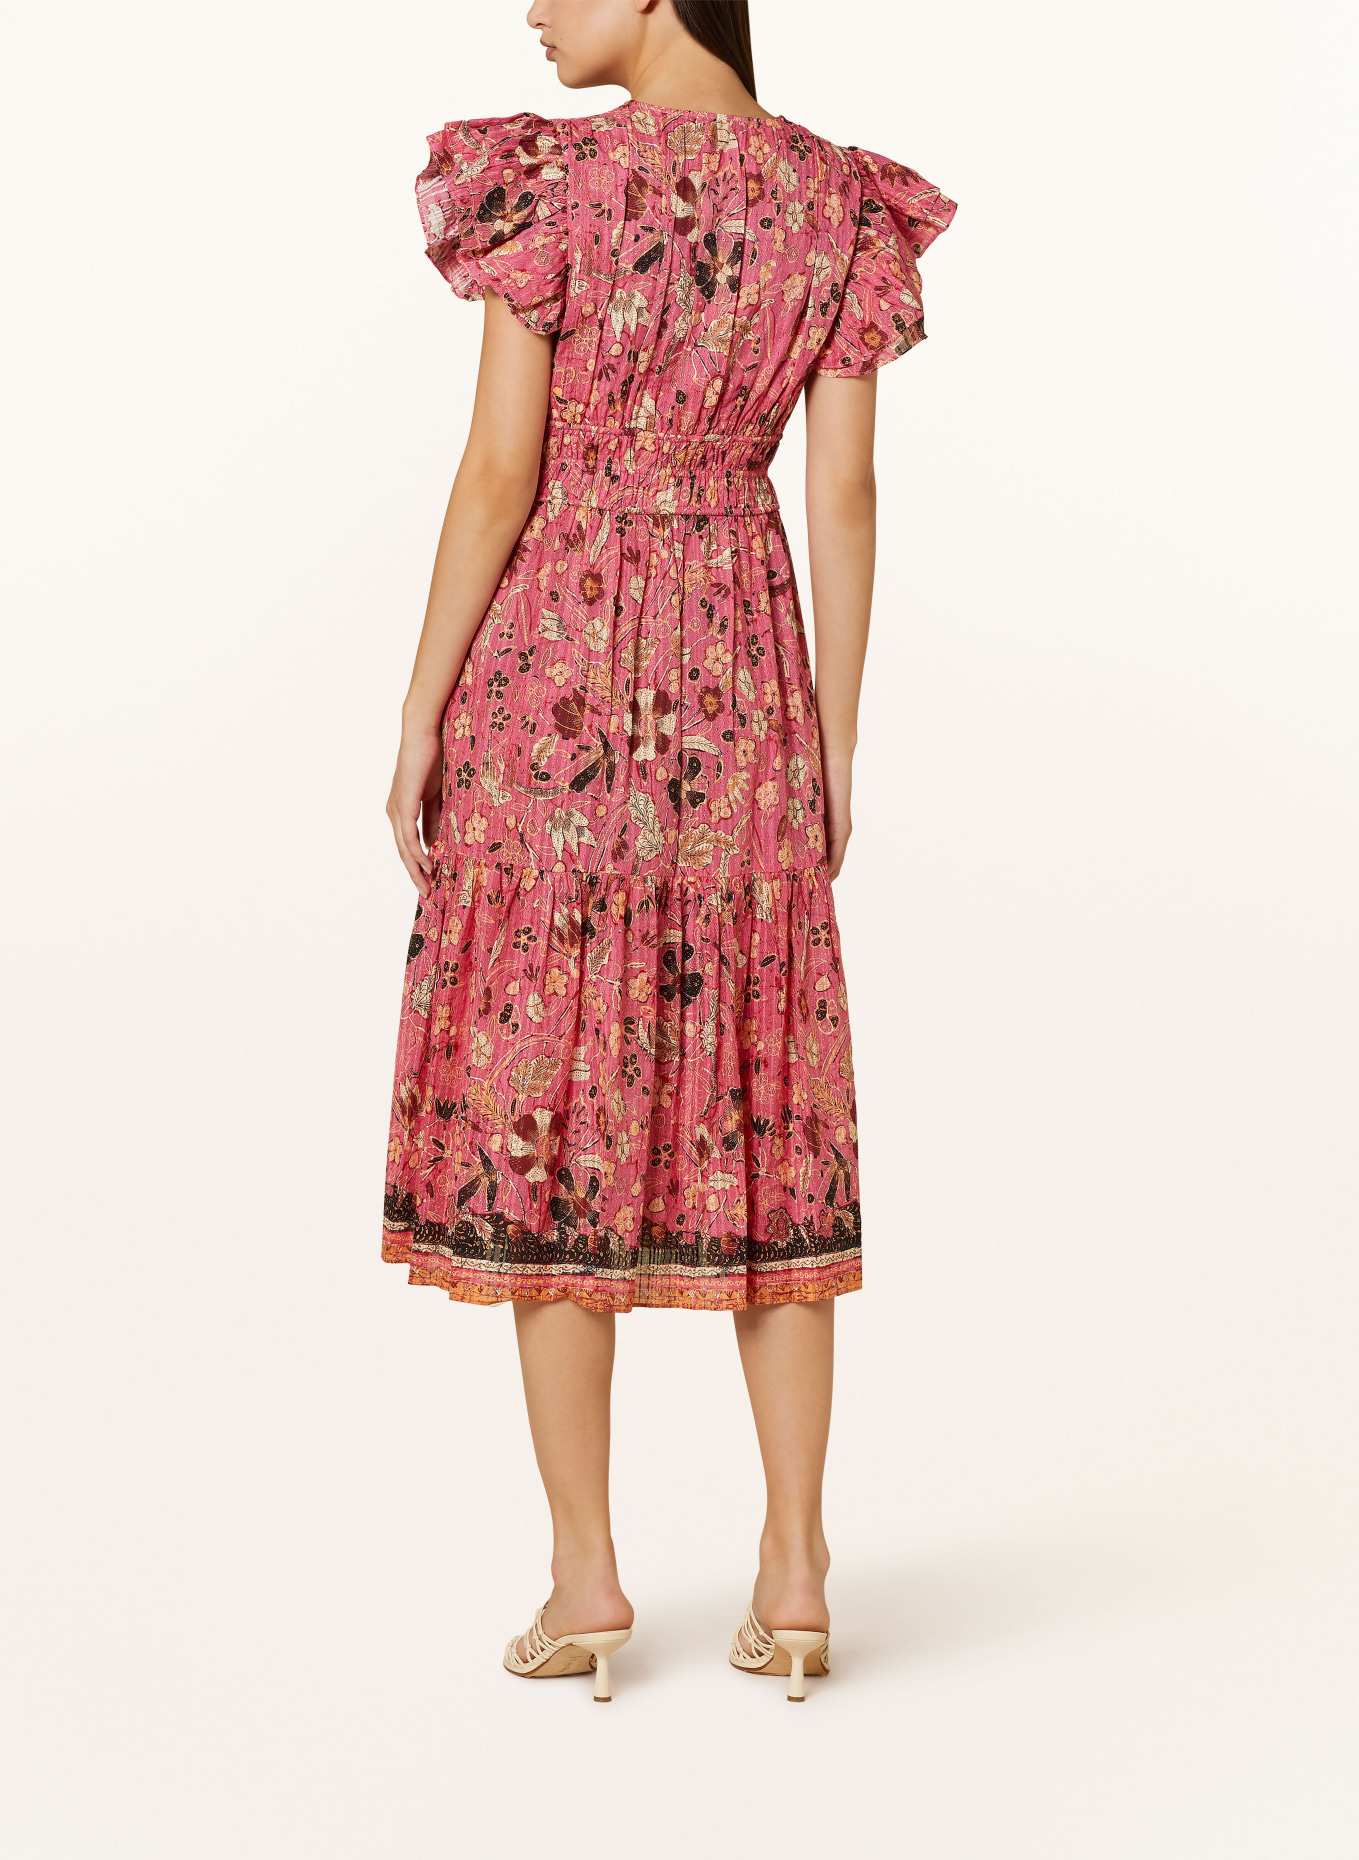 ULLA JOHNSON Kleid ANGELICA mit Volants, Farbe: PINK/ DUNKELROT/ SCHWARZ (Bild 3)